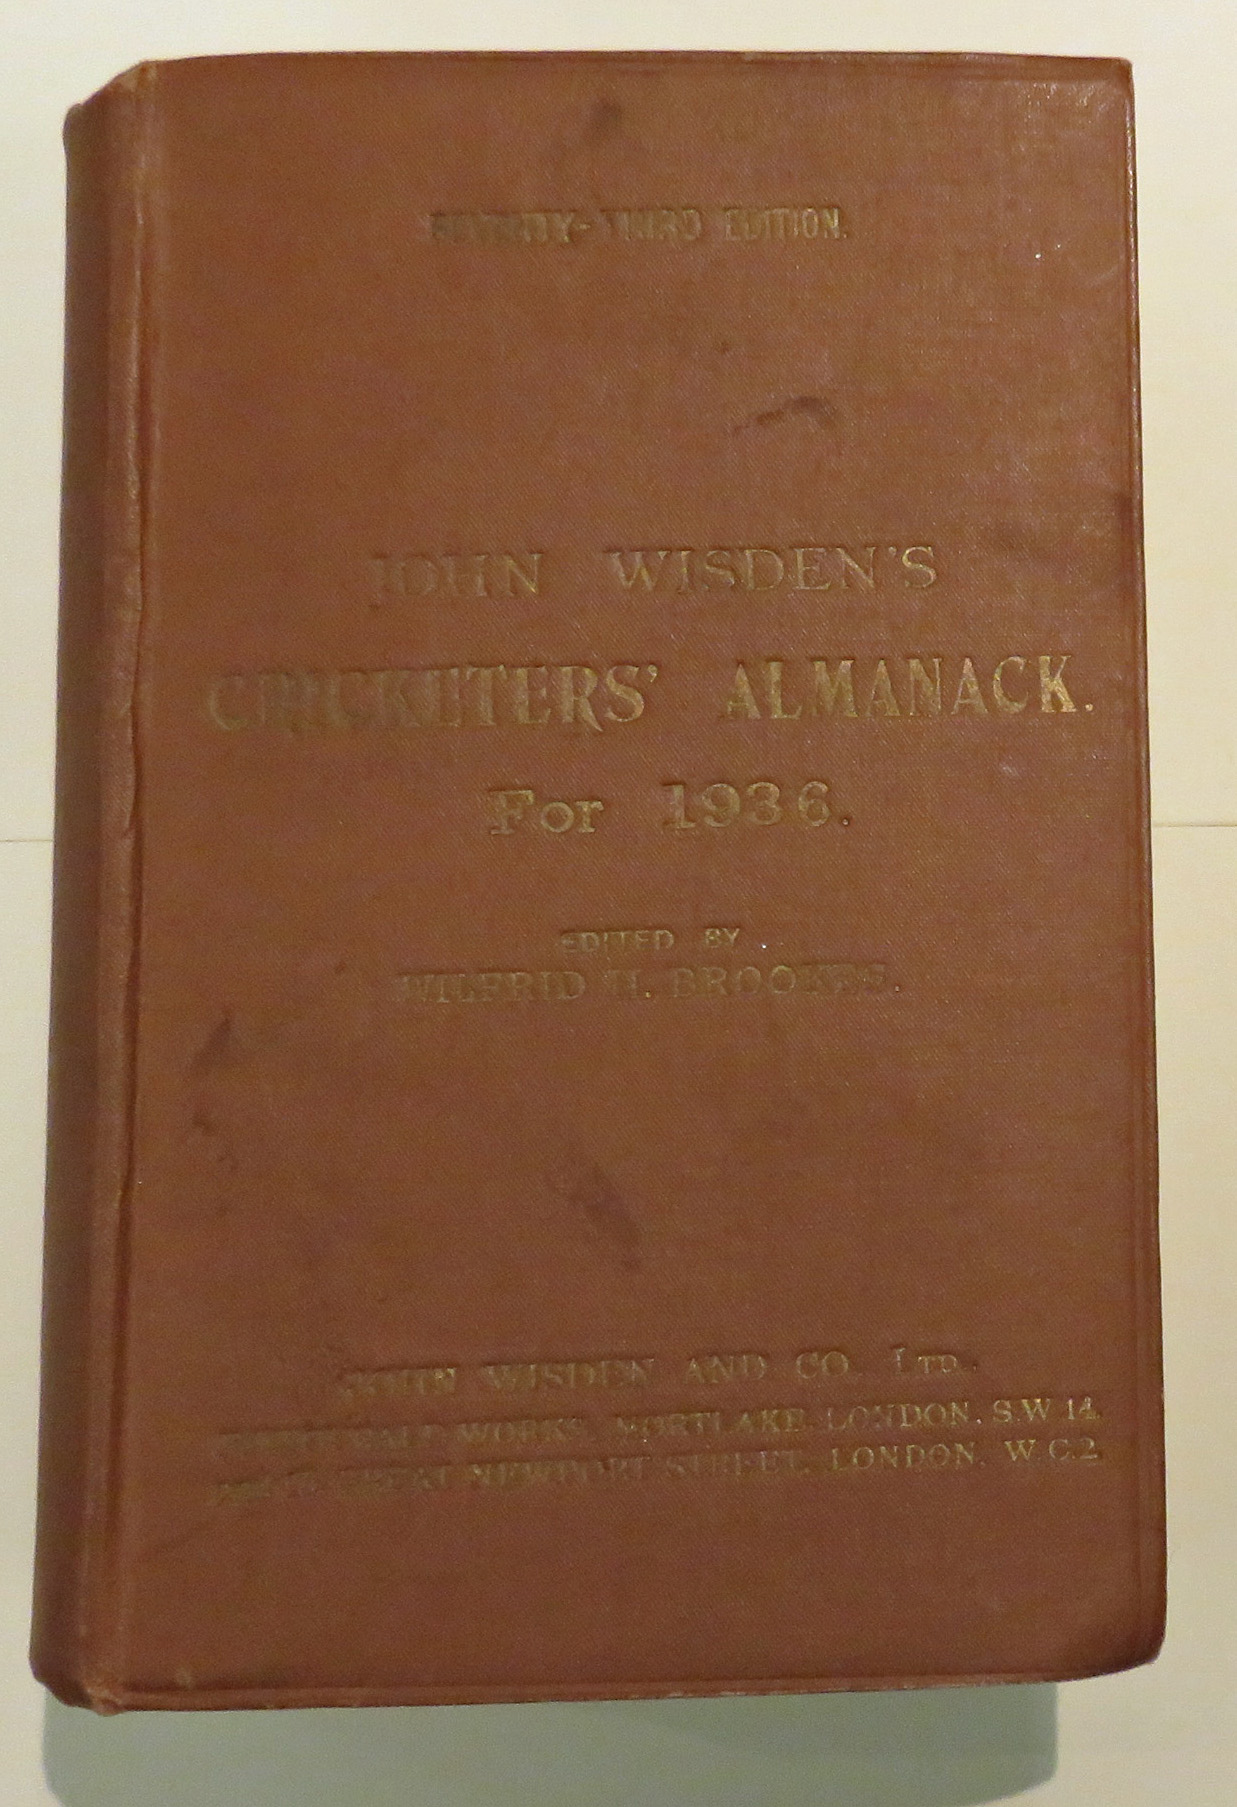 **John Wisden's Cricketers' Almanack For 1936**